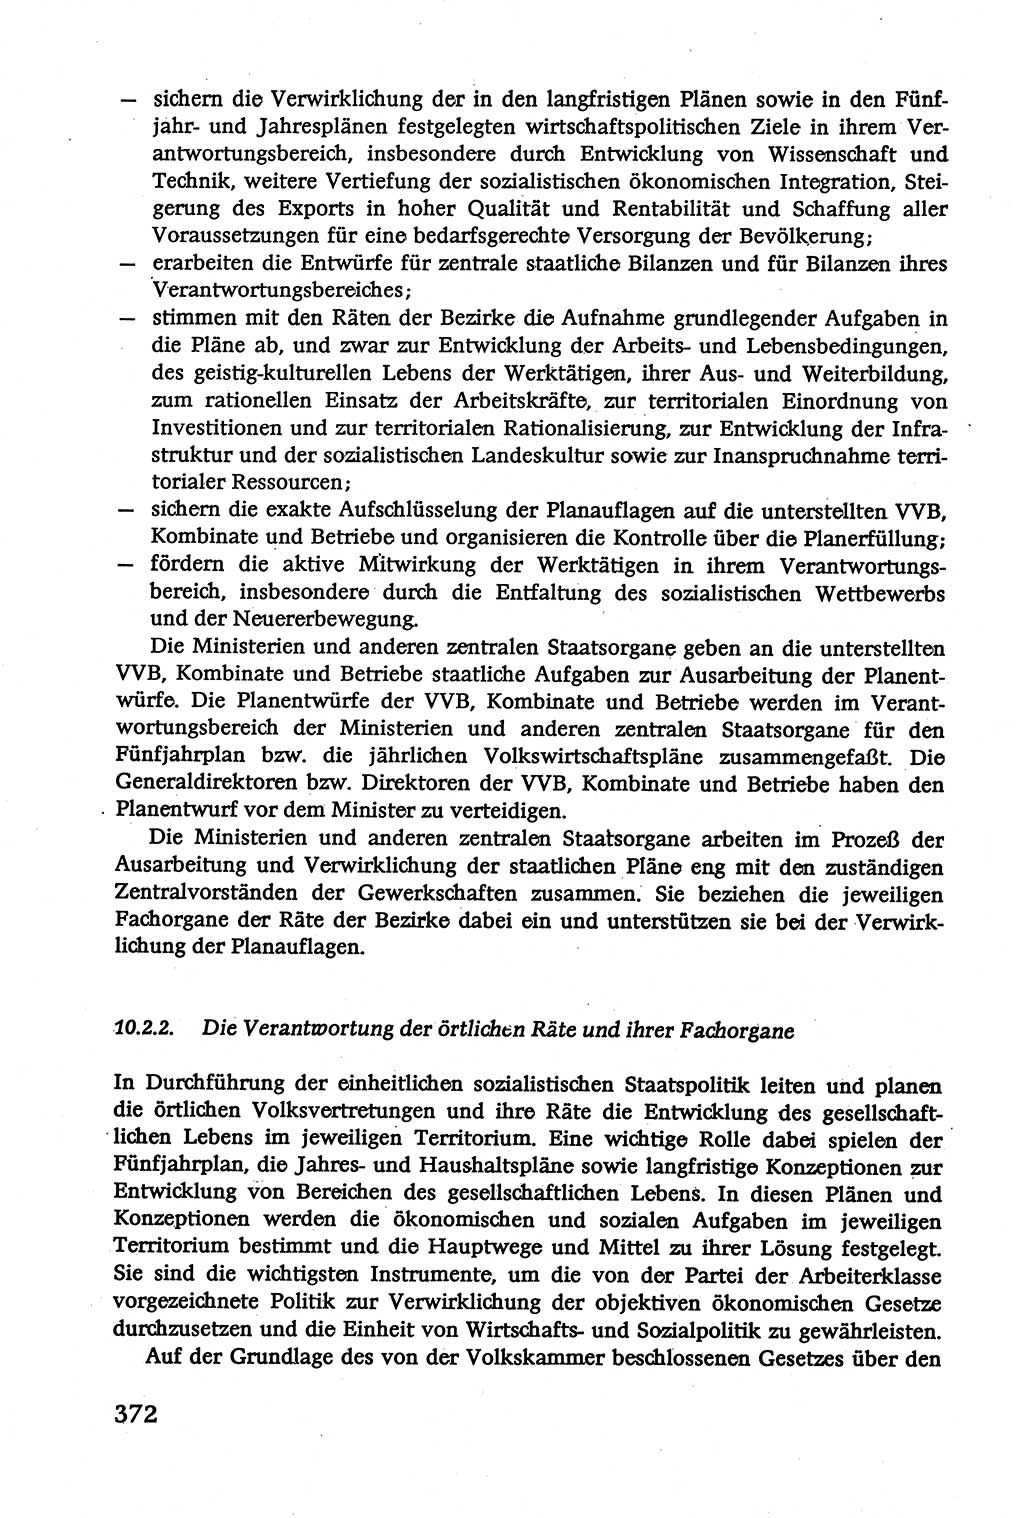 Verwaltungsrecht [Deutsche Demokratische Republik (DDR)], Lehrbuch 1979, Seite 372 (Verw.-R. DDR Lb. 1979, S. 372)